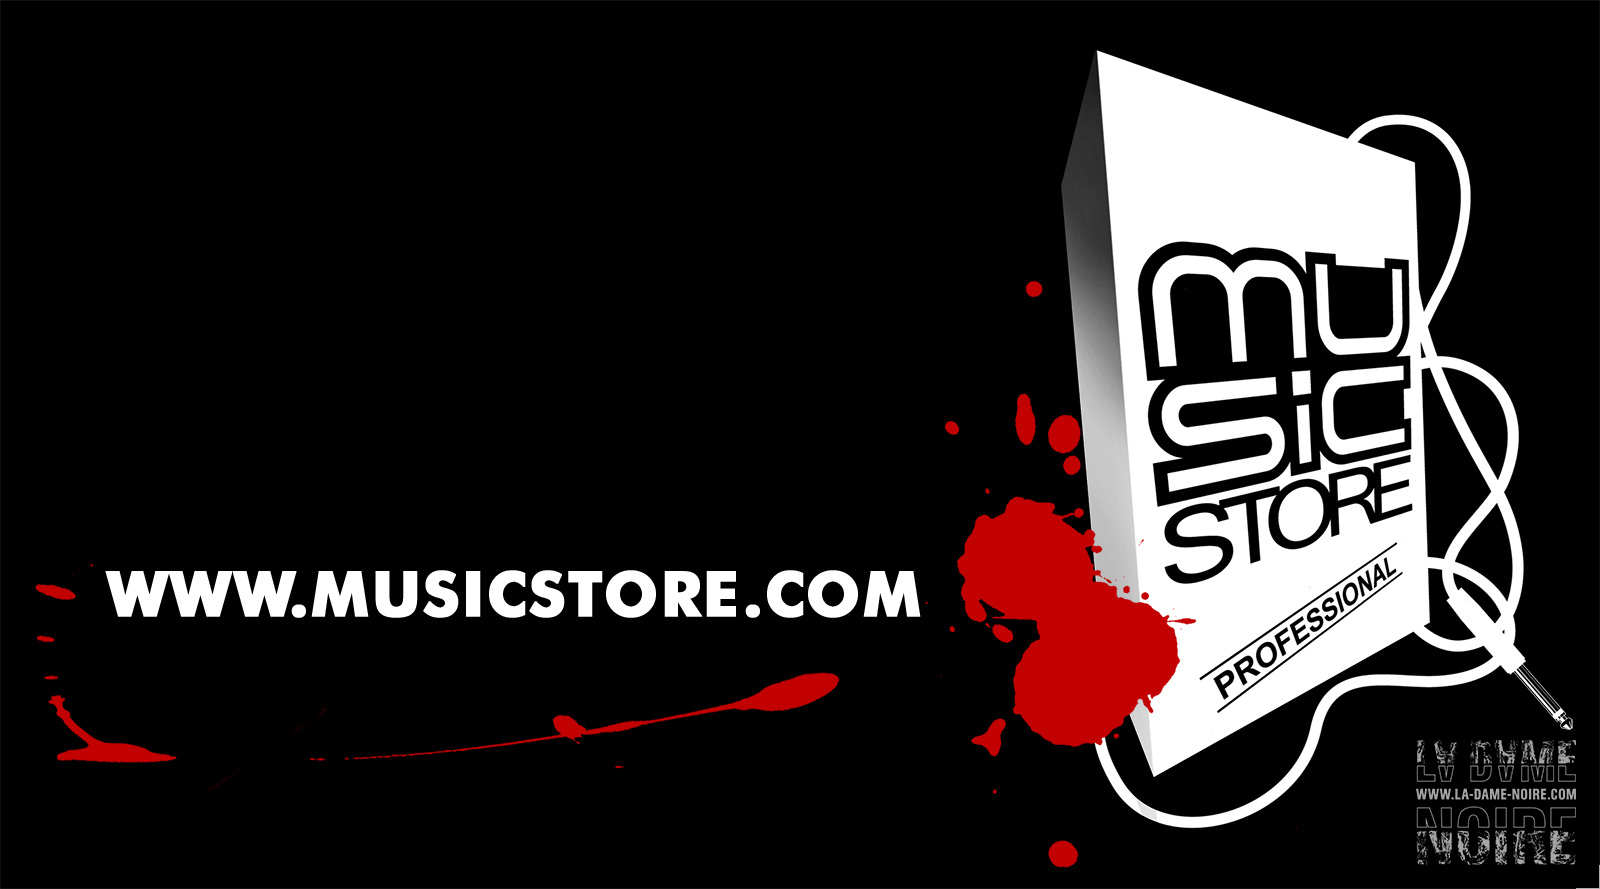 Réinterprétation du logo Musicstore pour sticker